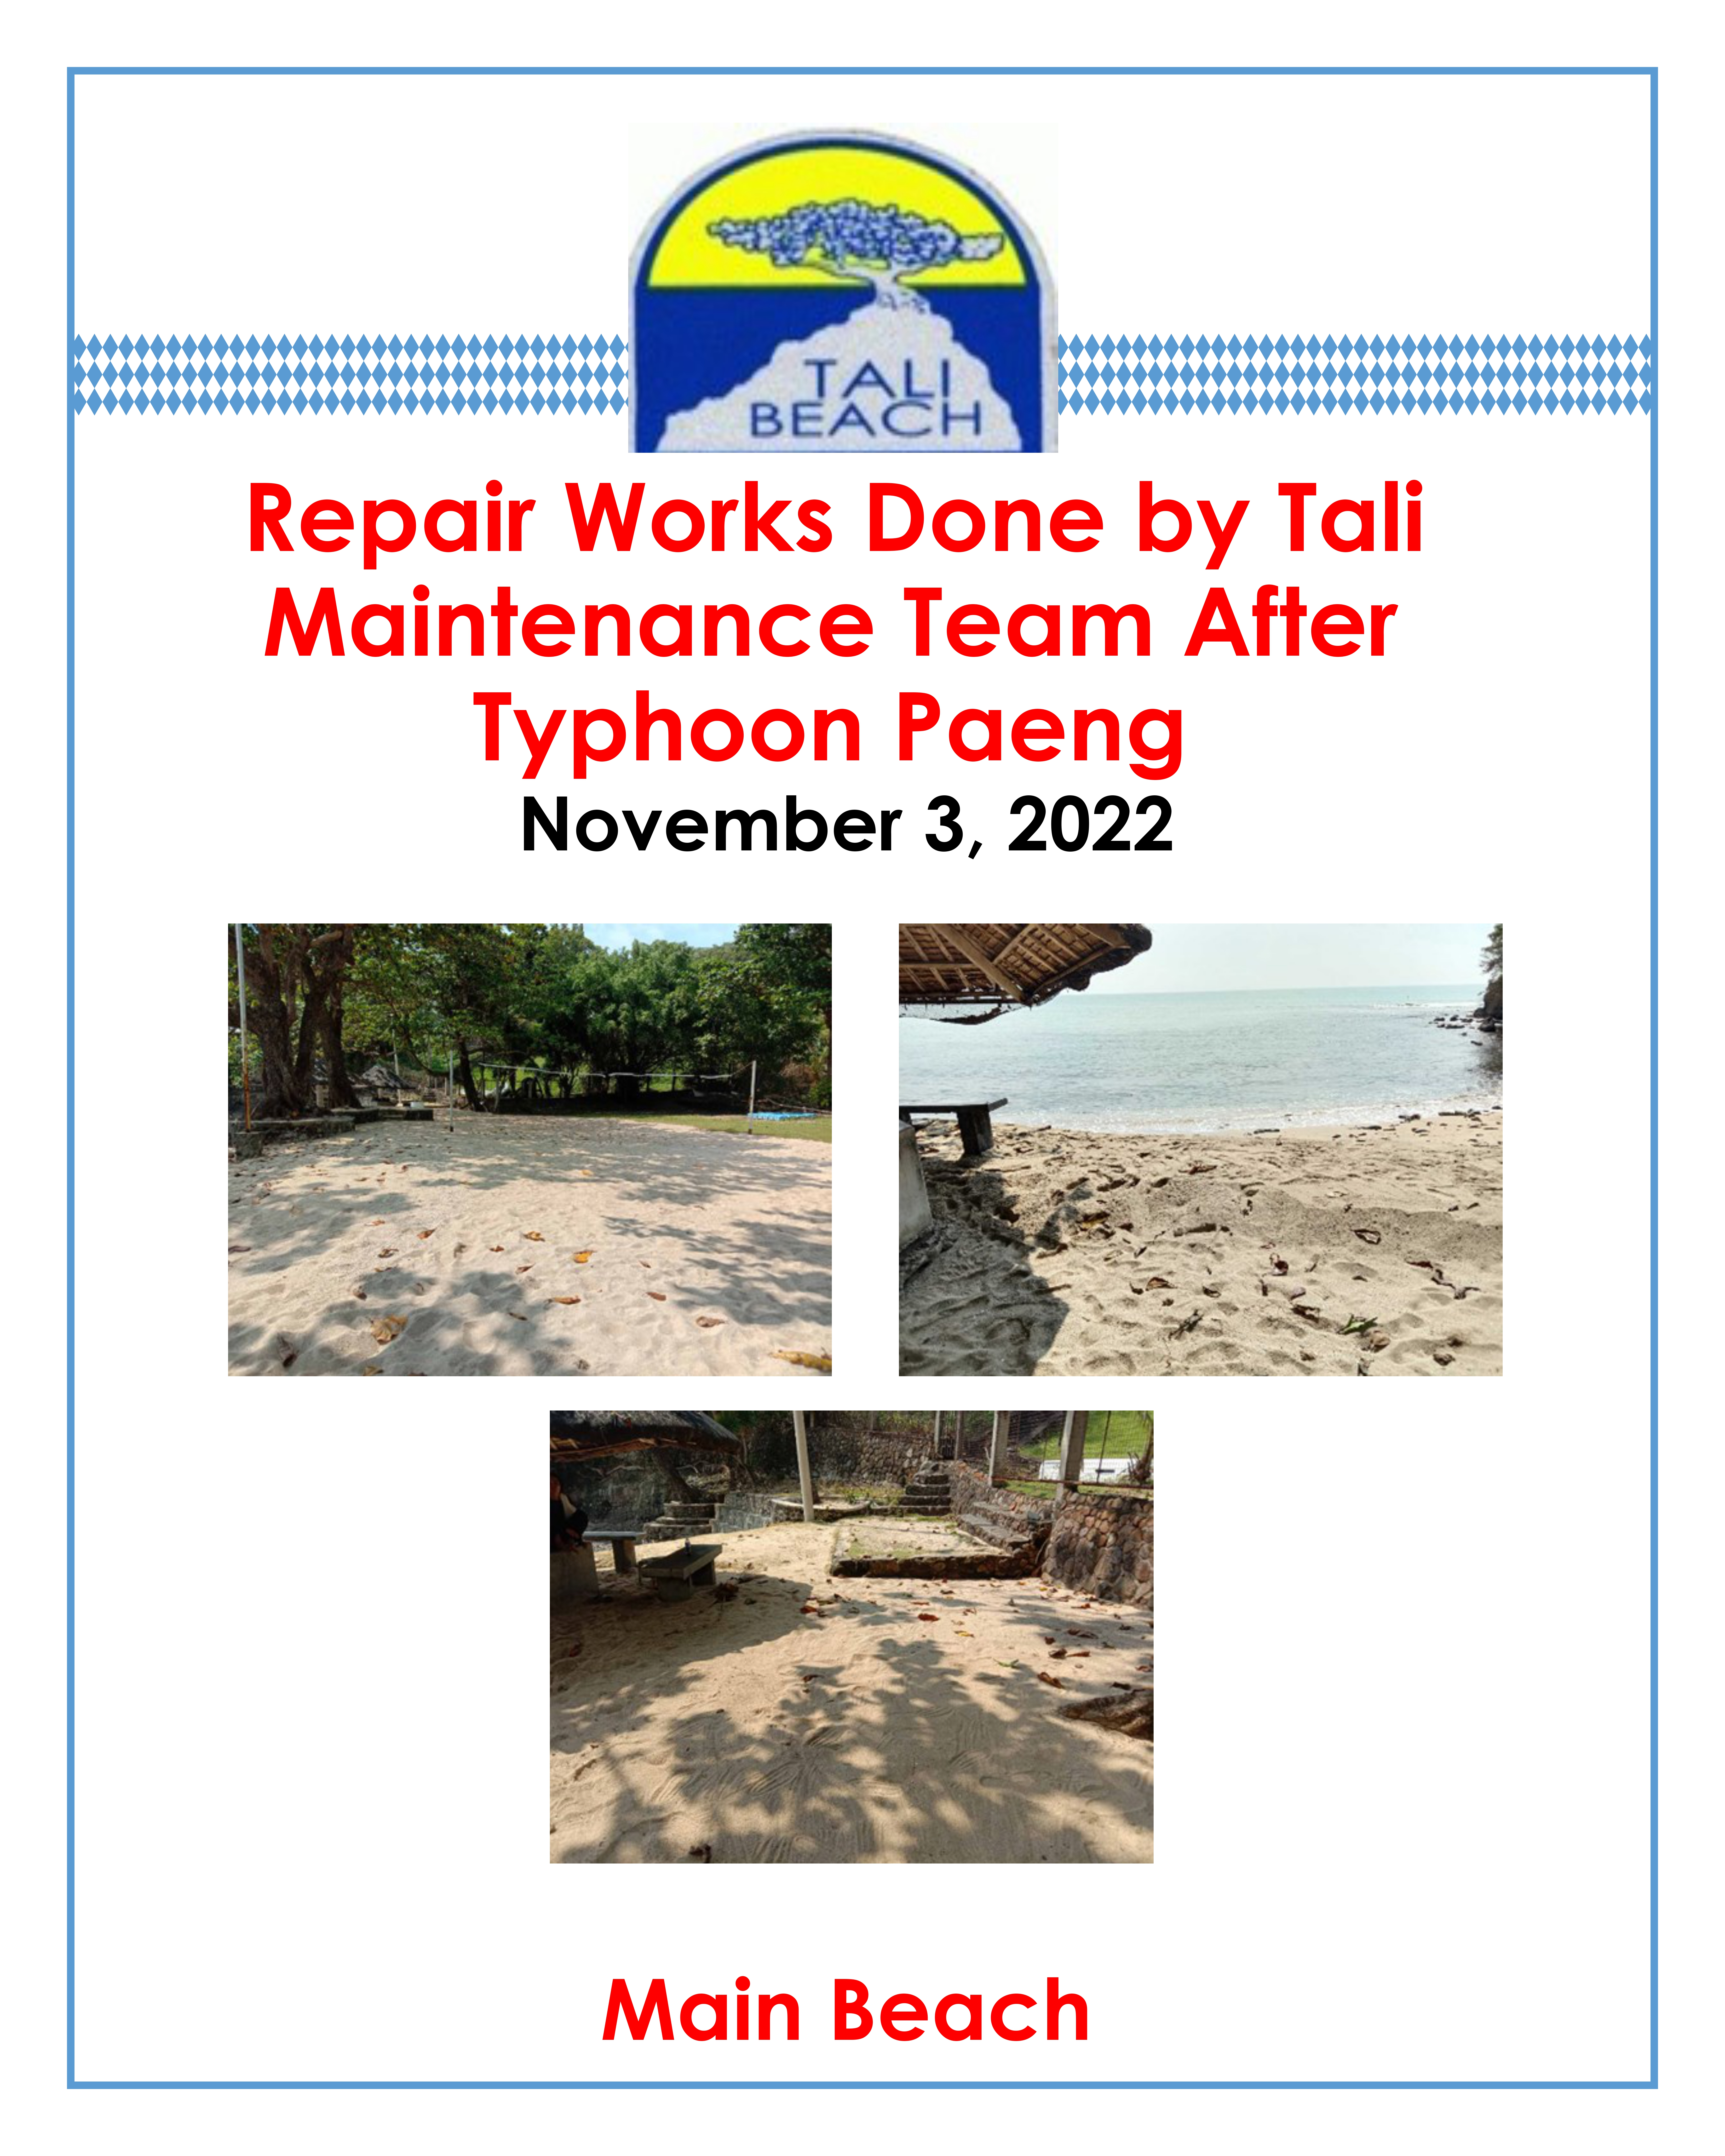 REPAIR WORKS AT MAIN BEACH